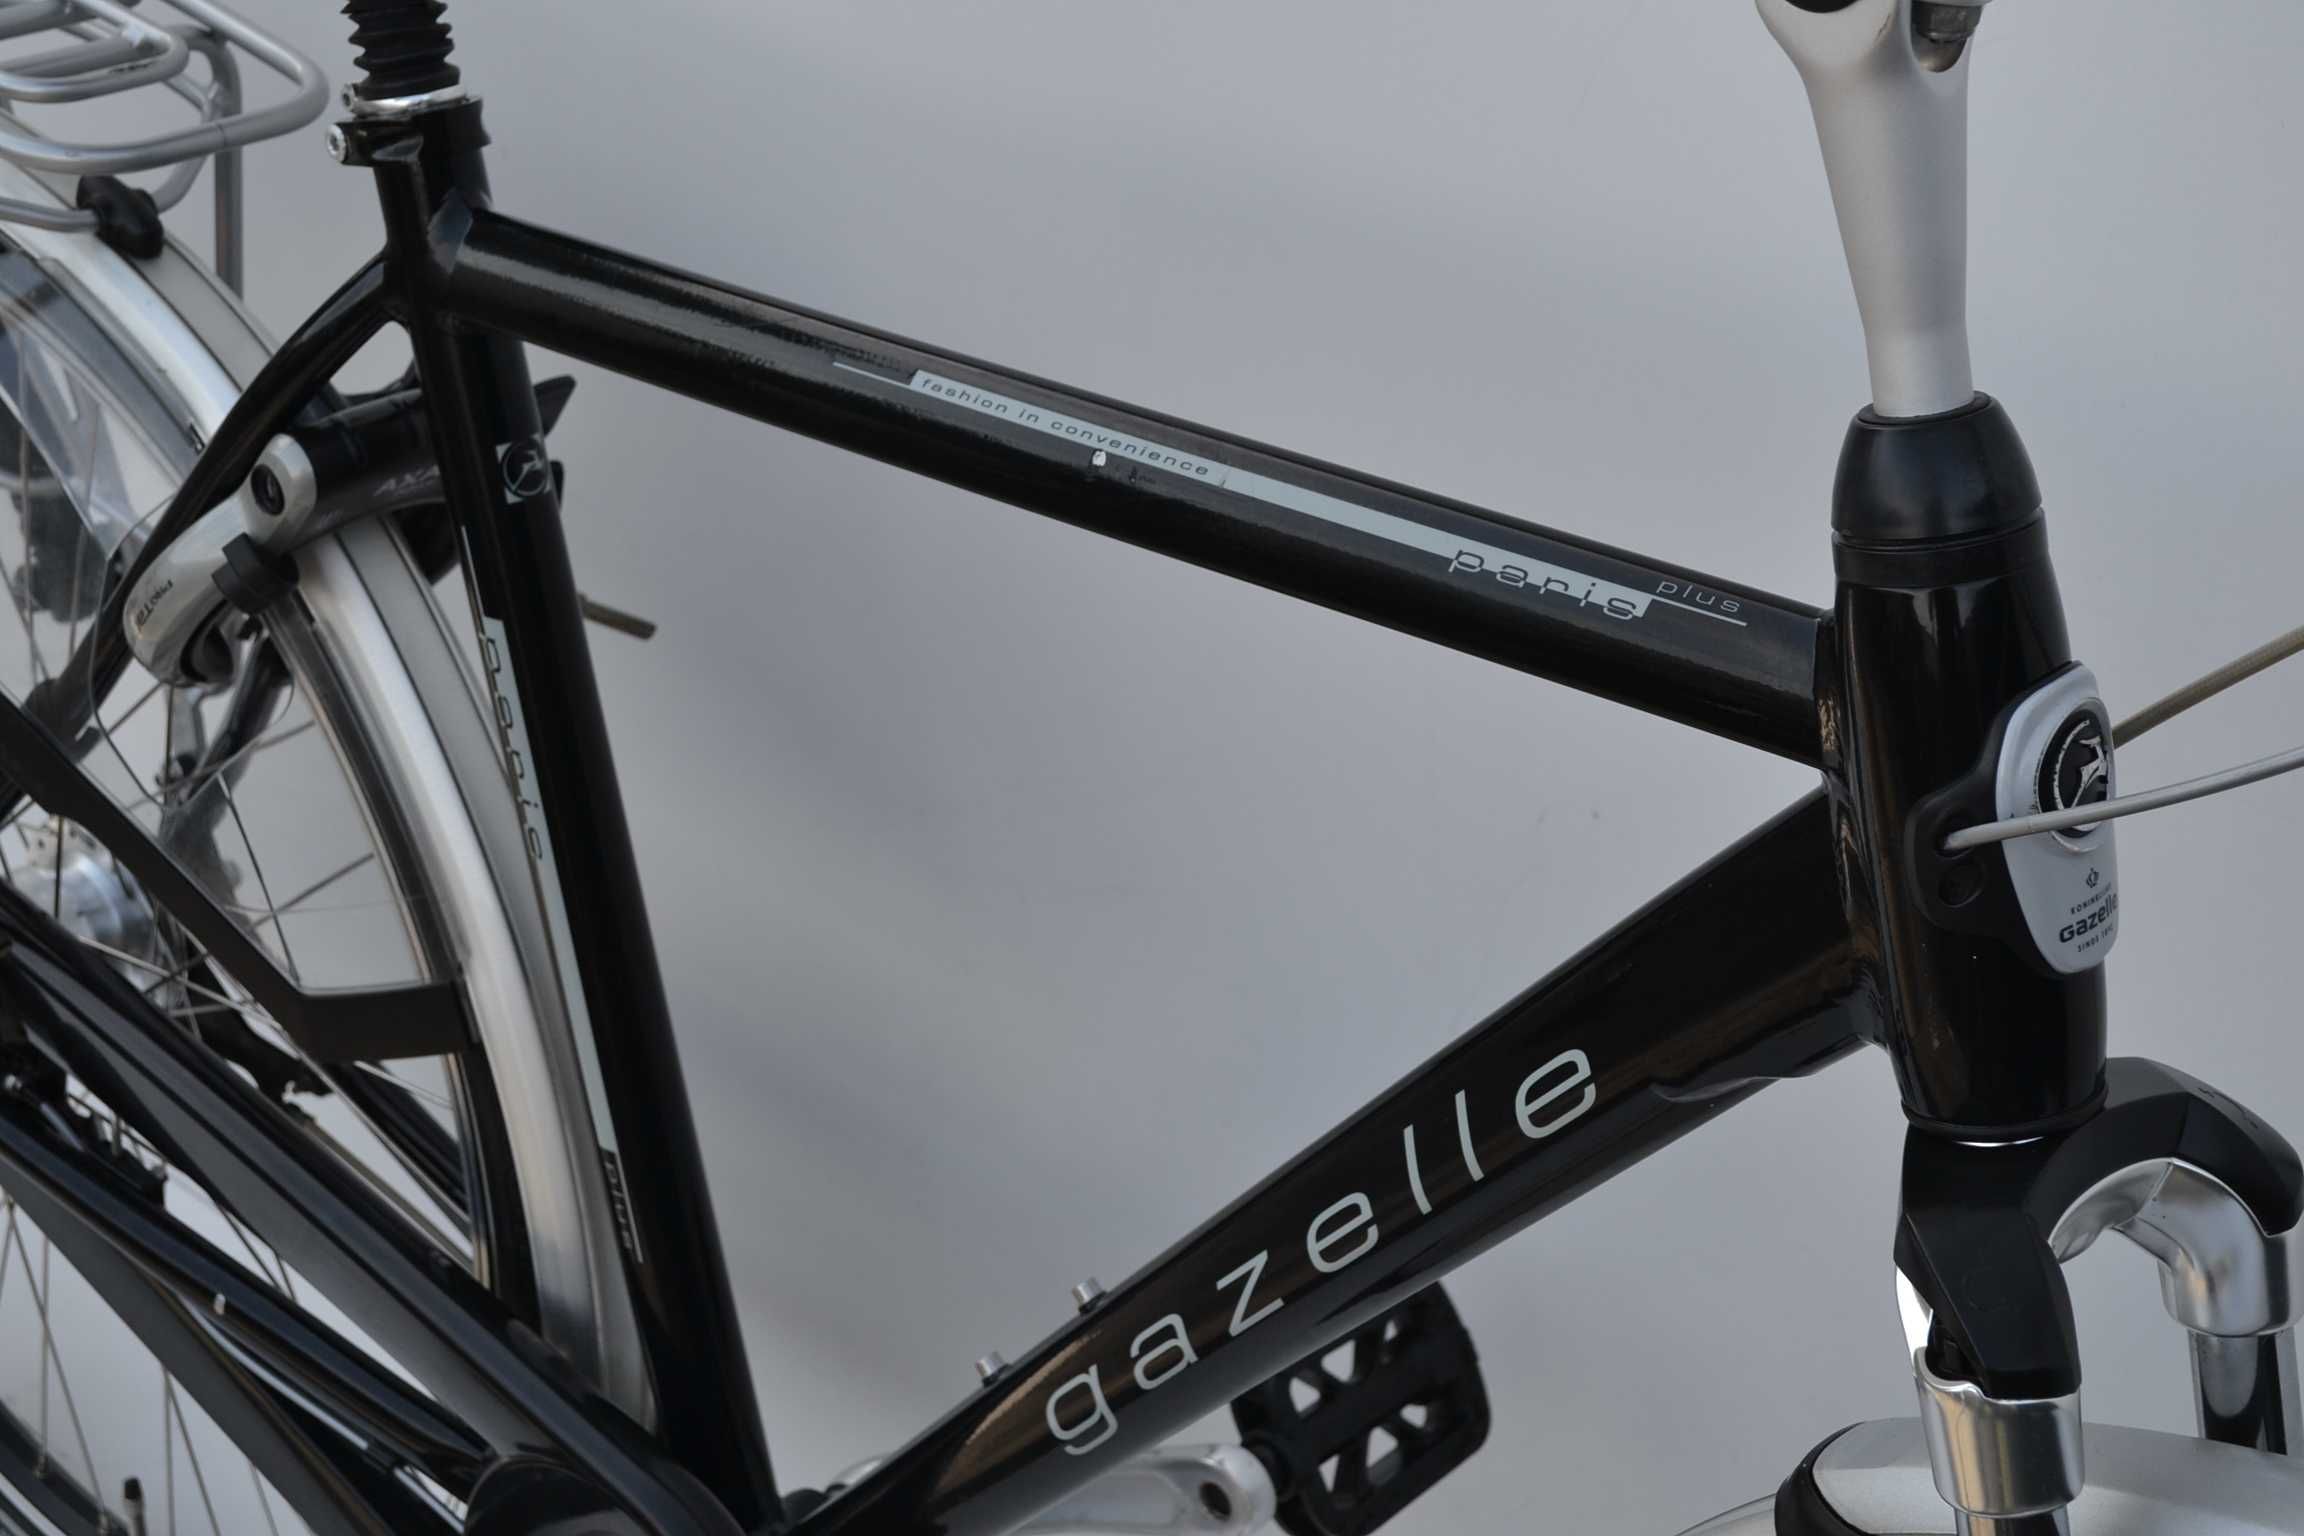 Najlepsze rowery holenderskie * Gazelle Paris koła 28 Nowy Tomyśl